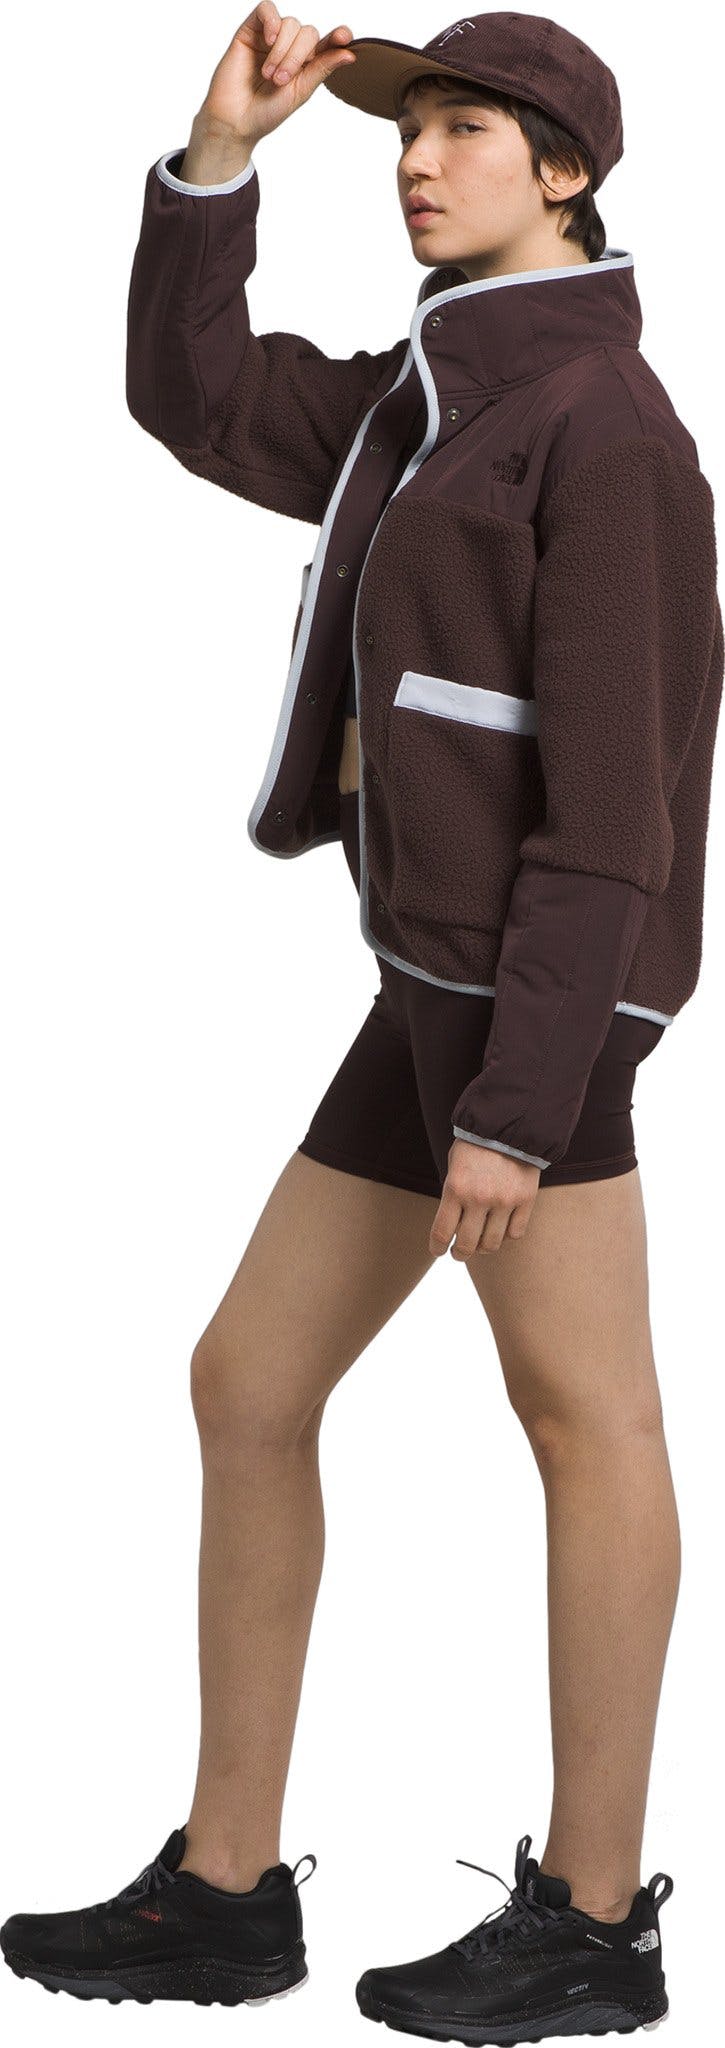 Product gallery image number 2 for product Cragmont Fleece Sweatshirt - Women's